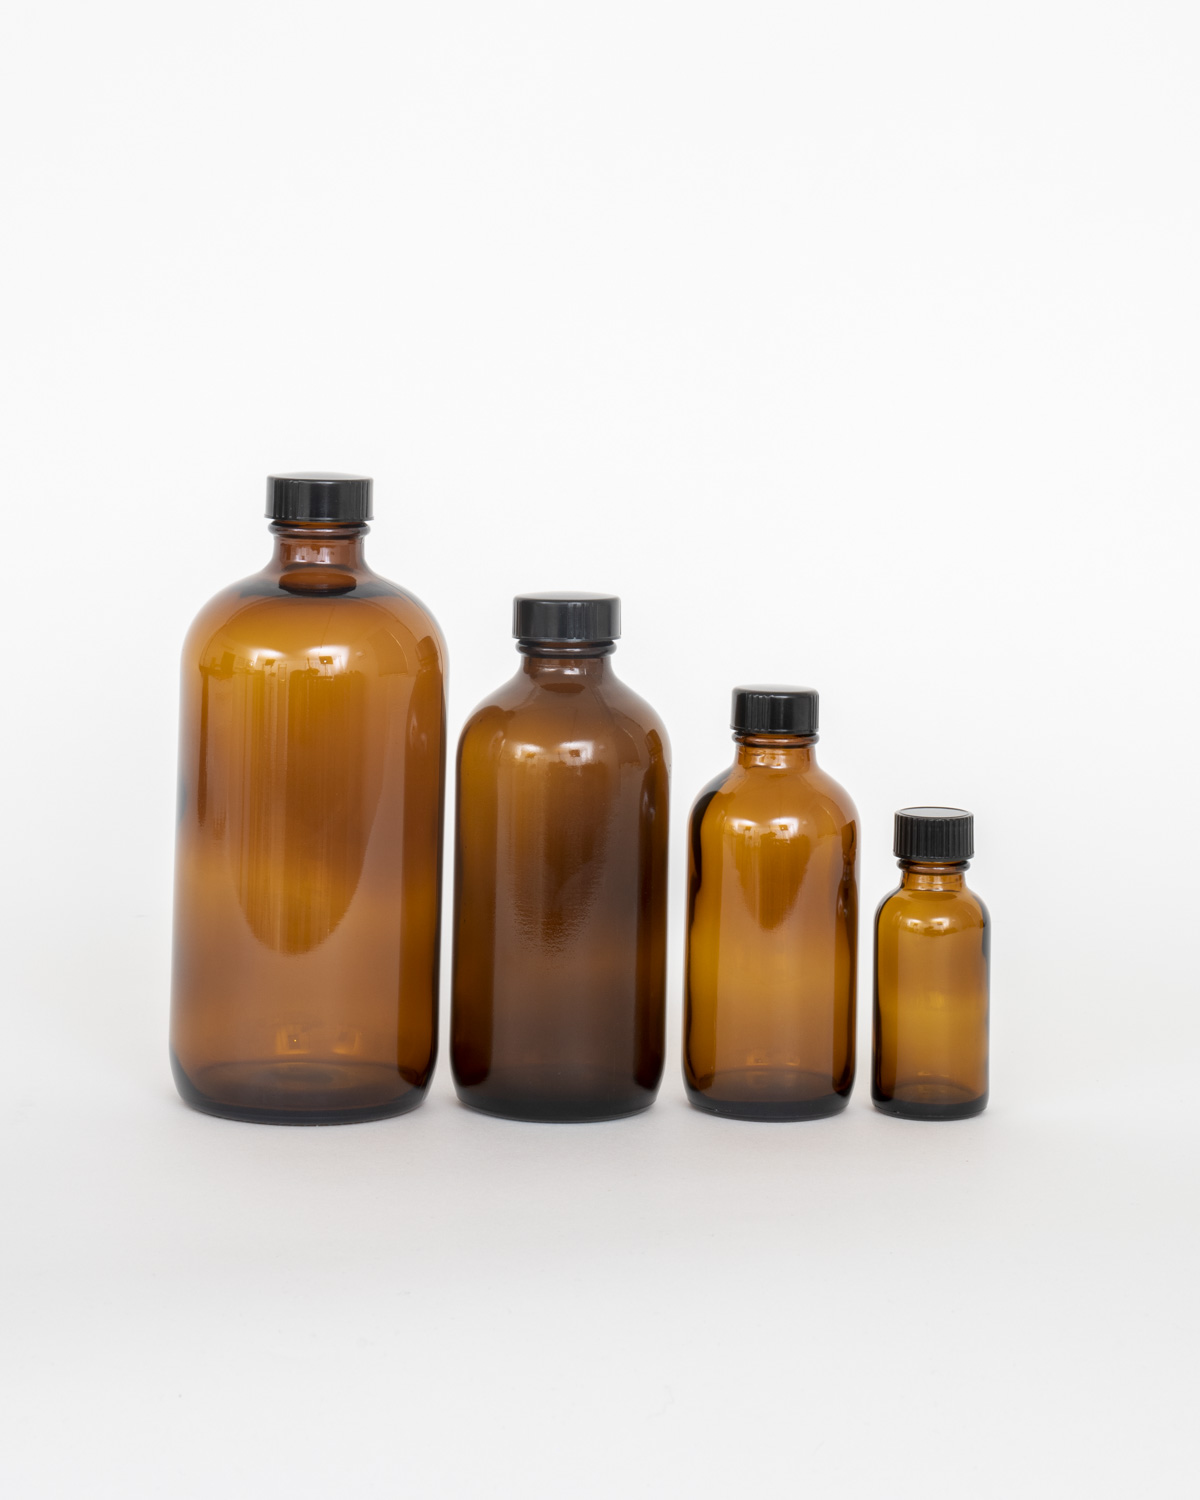 Amber Glass Bottle - Bostick & Sullivan